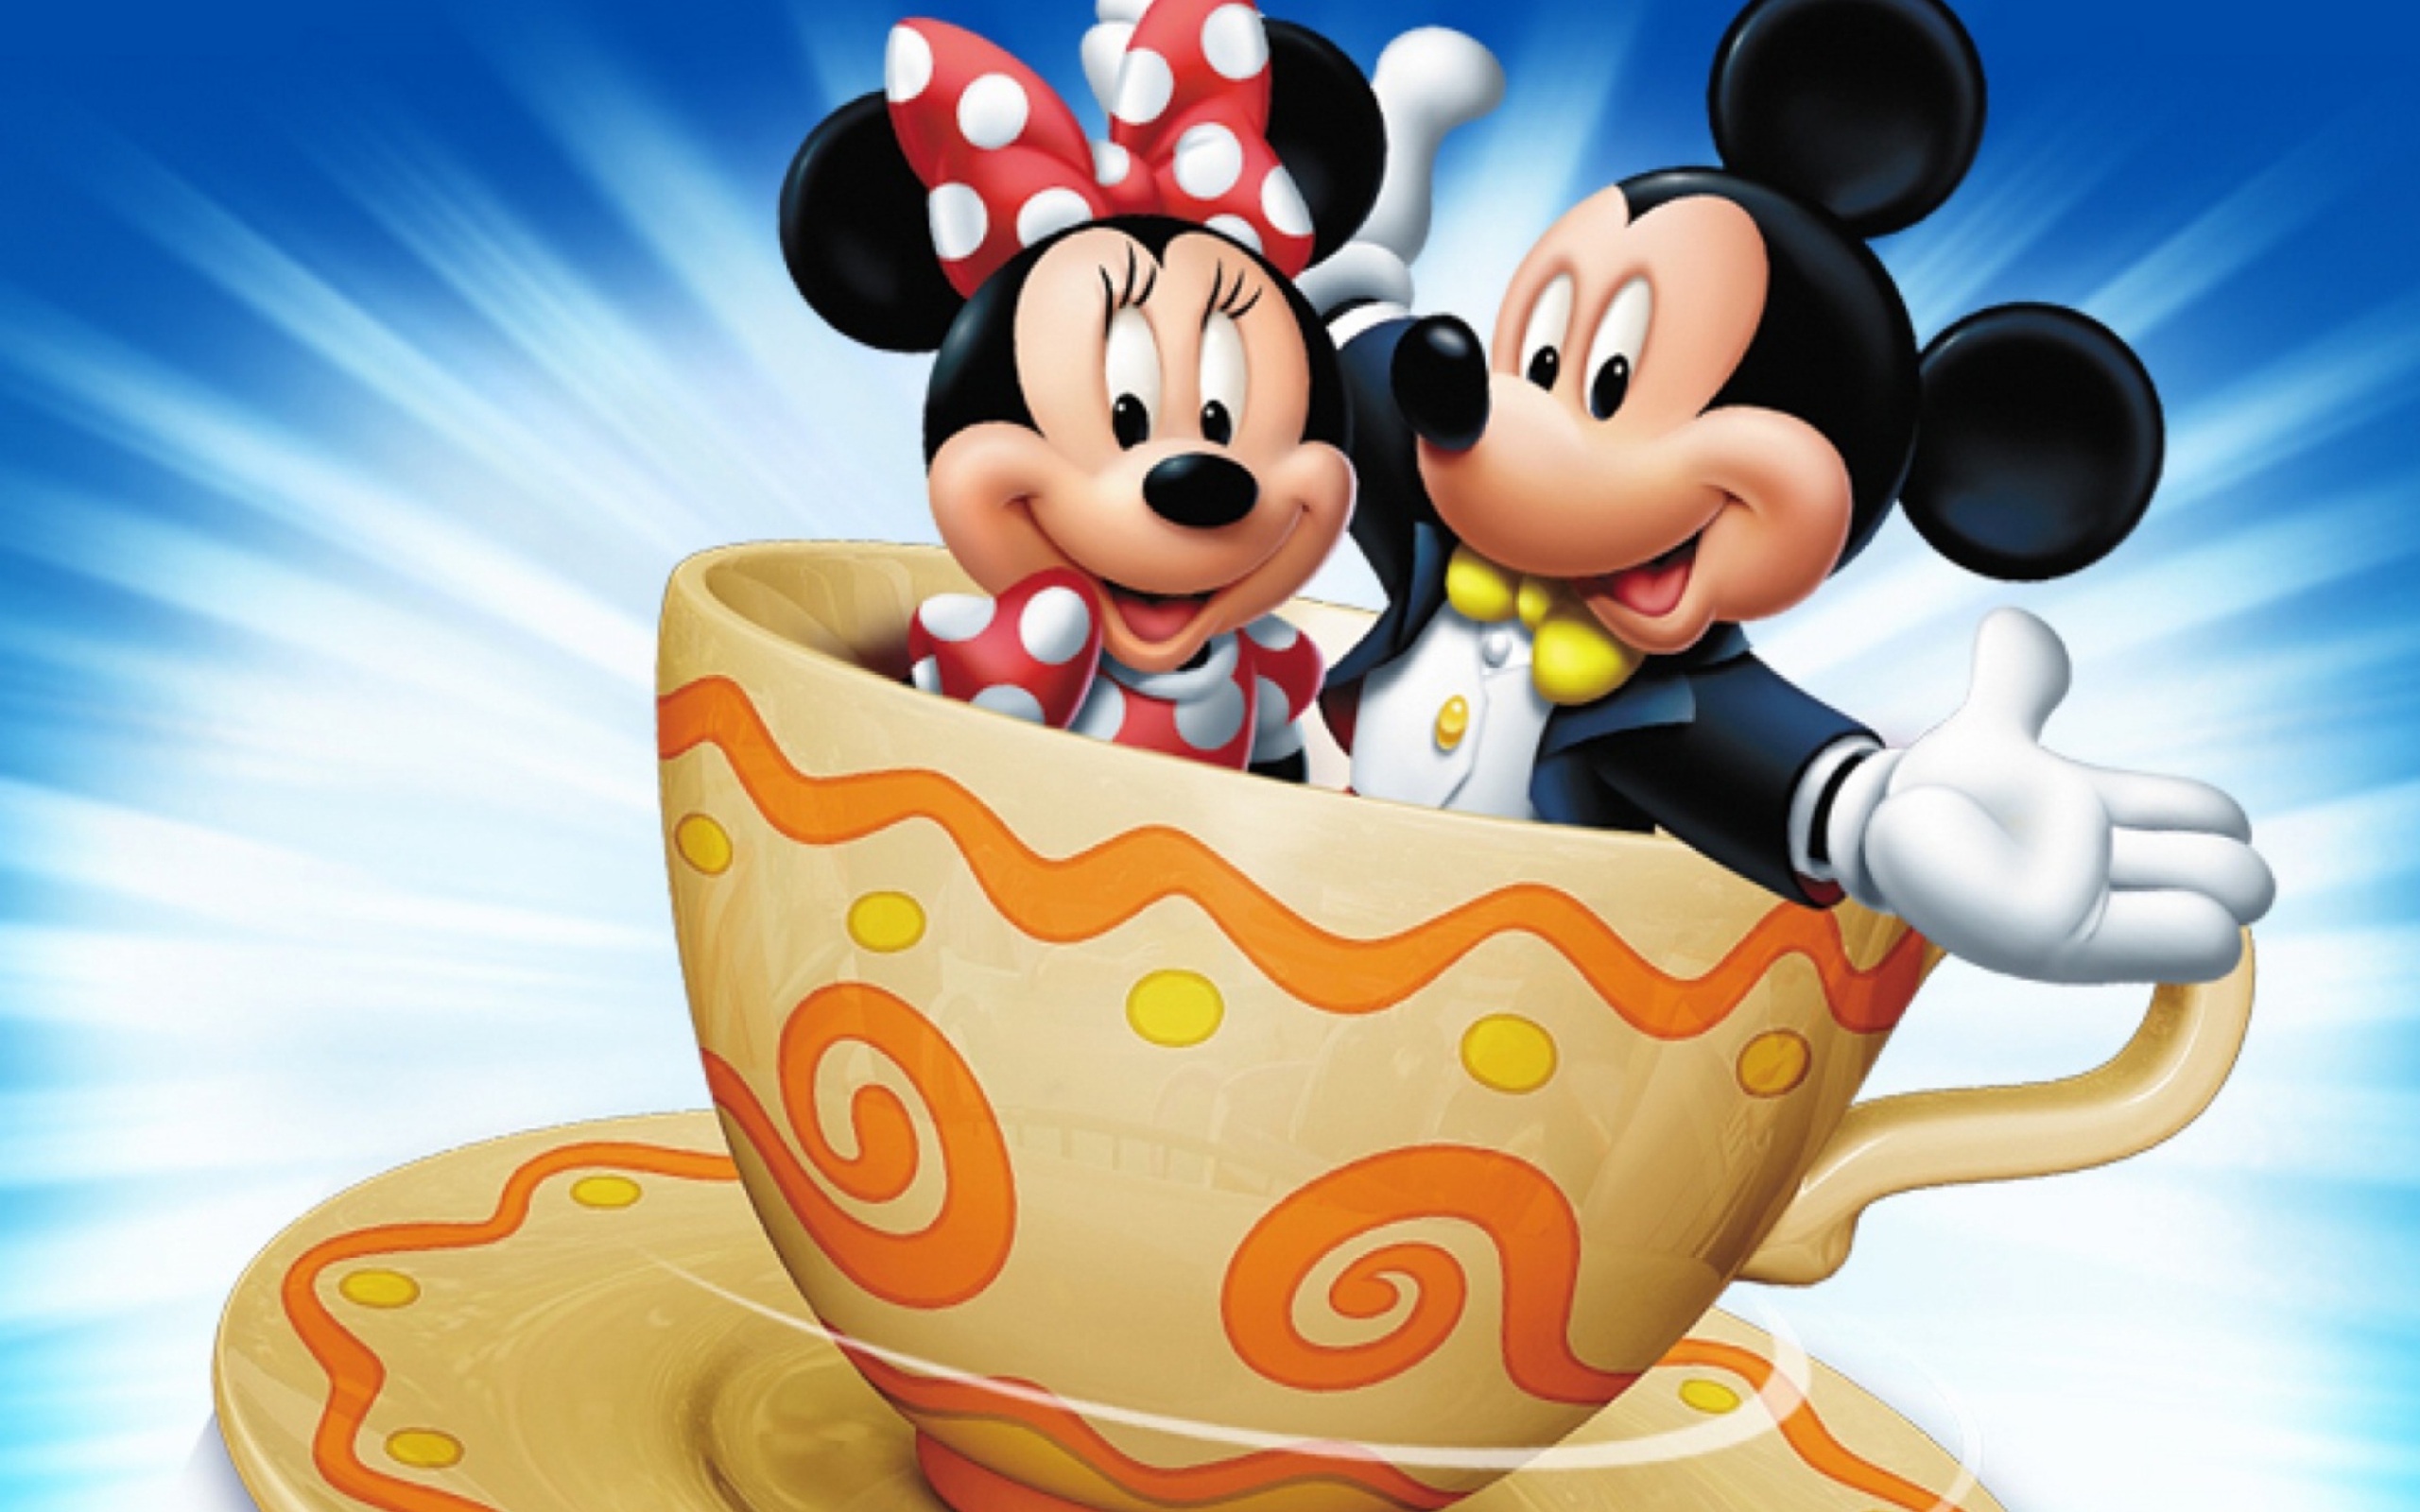 50+] Free Mickey and Minnie Wallpaper - WallpaperSafari